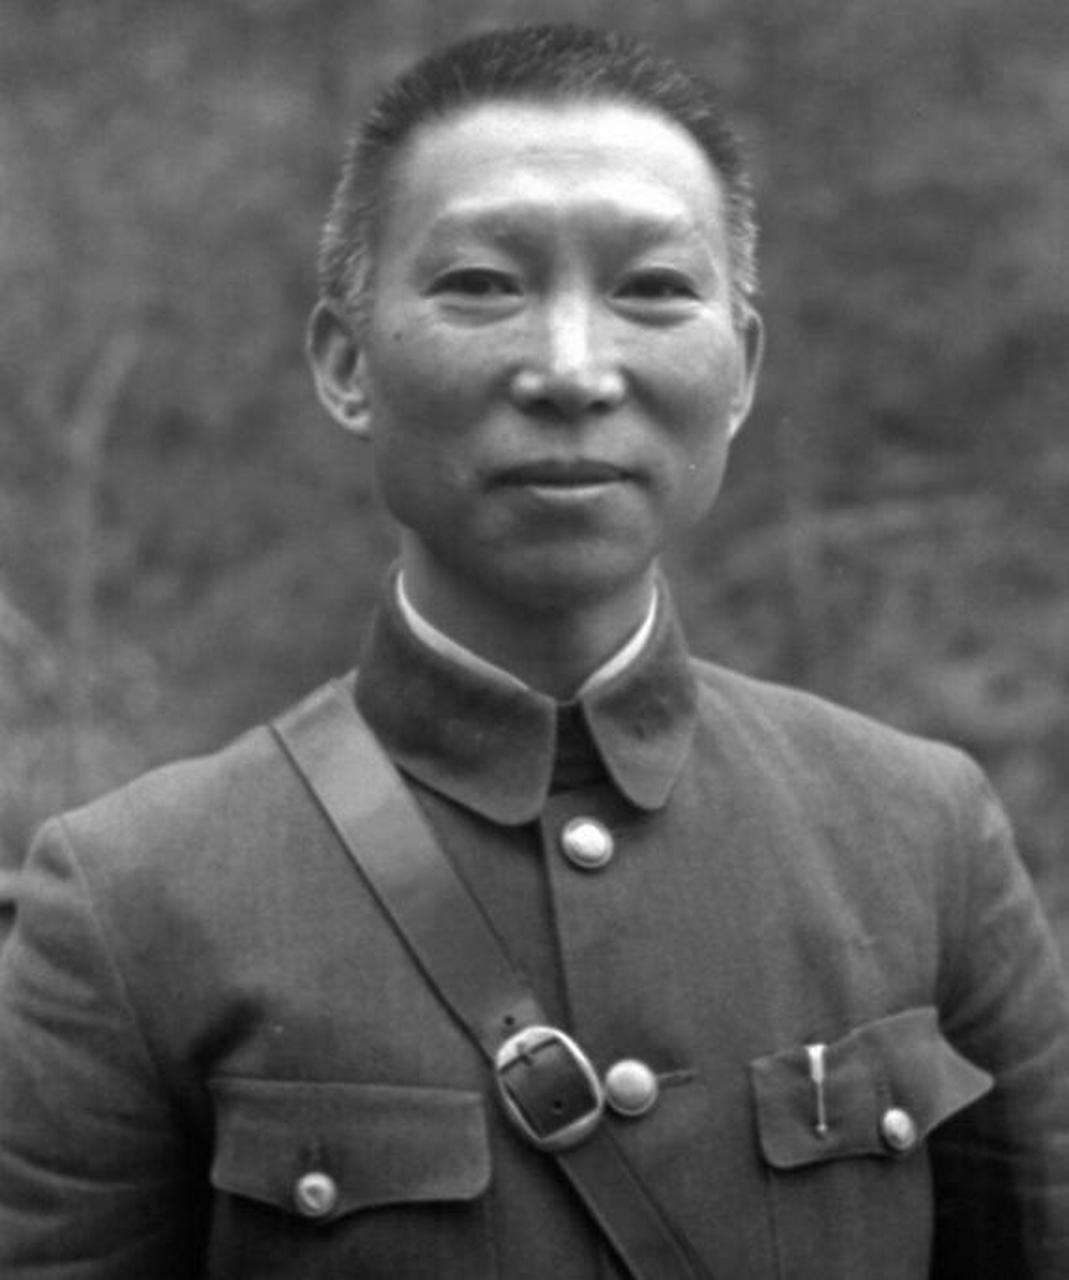 薛岳传将军长沙保卫战图片